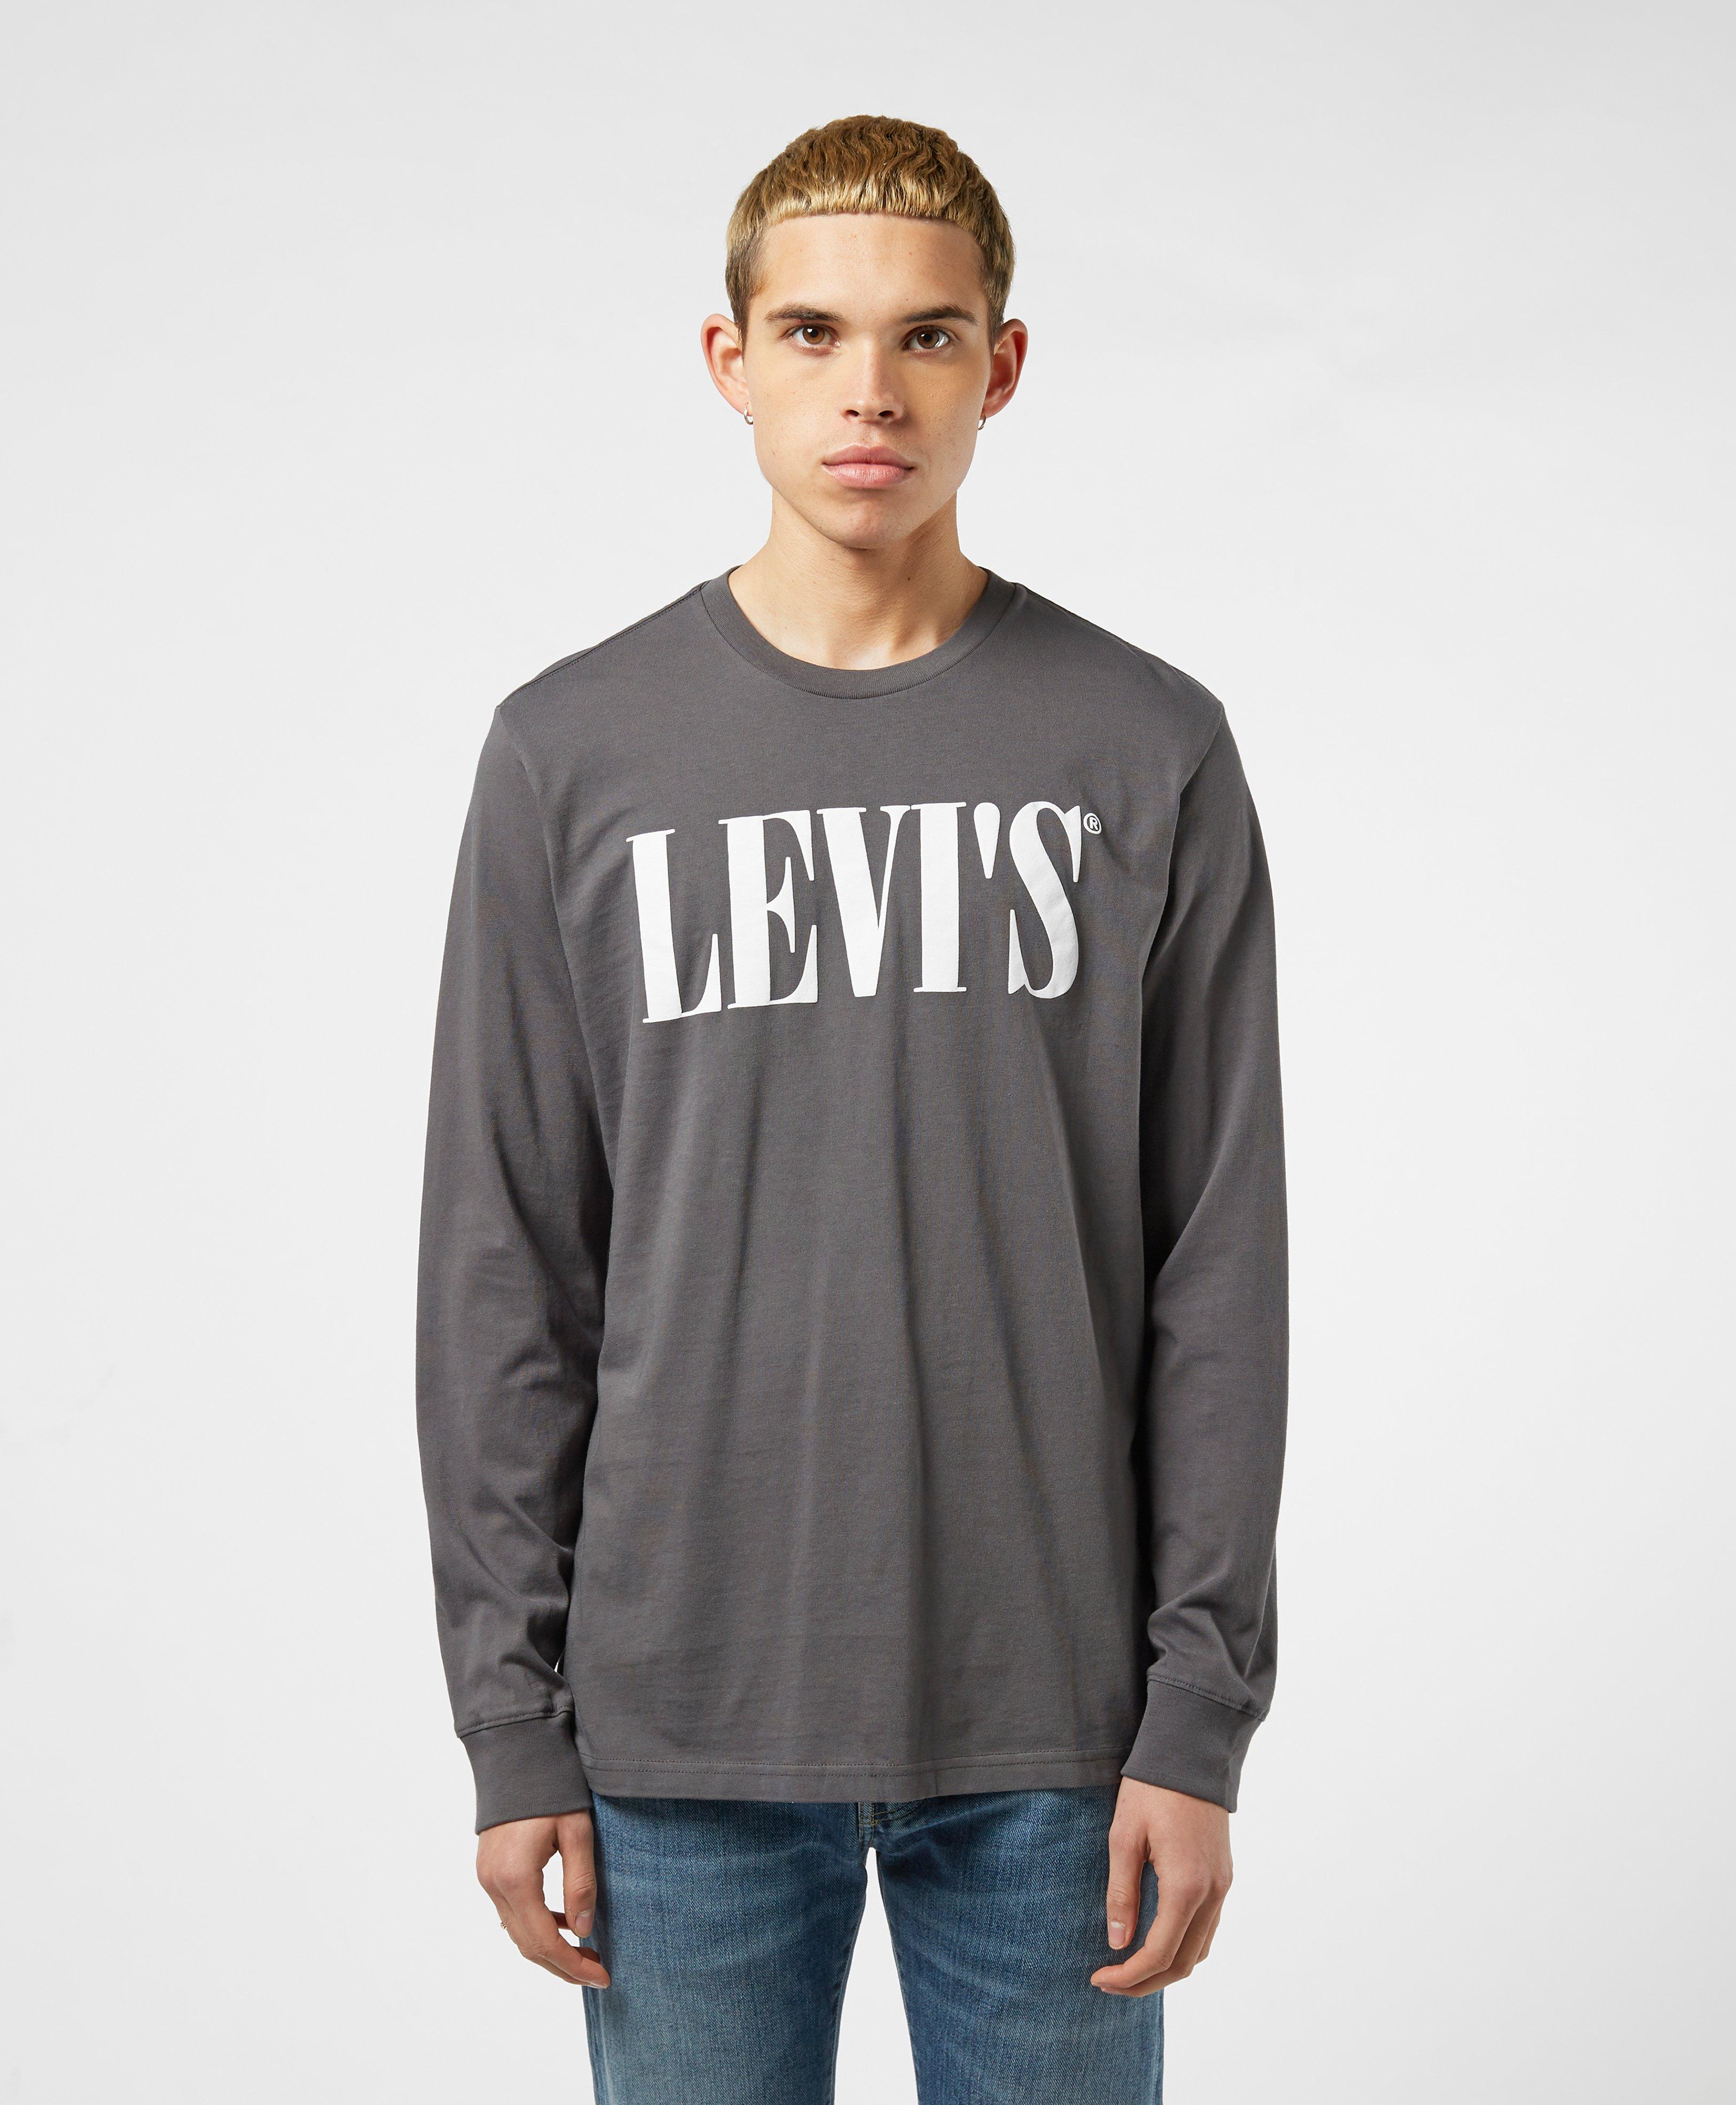 levis long sleeve t shirt